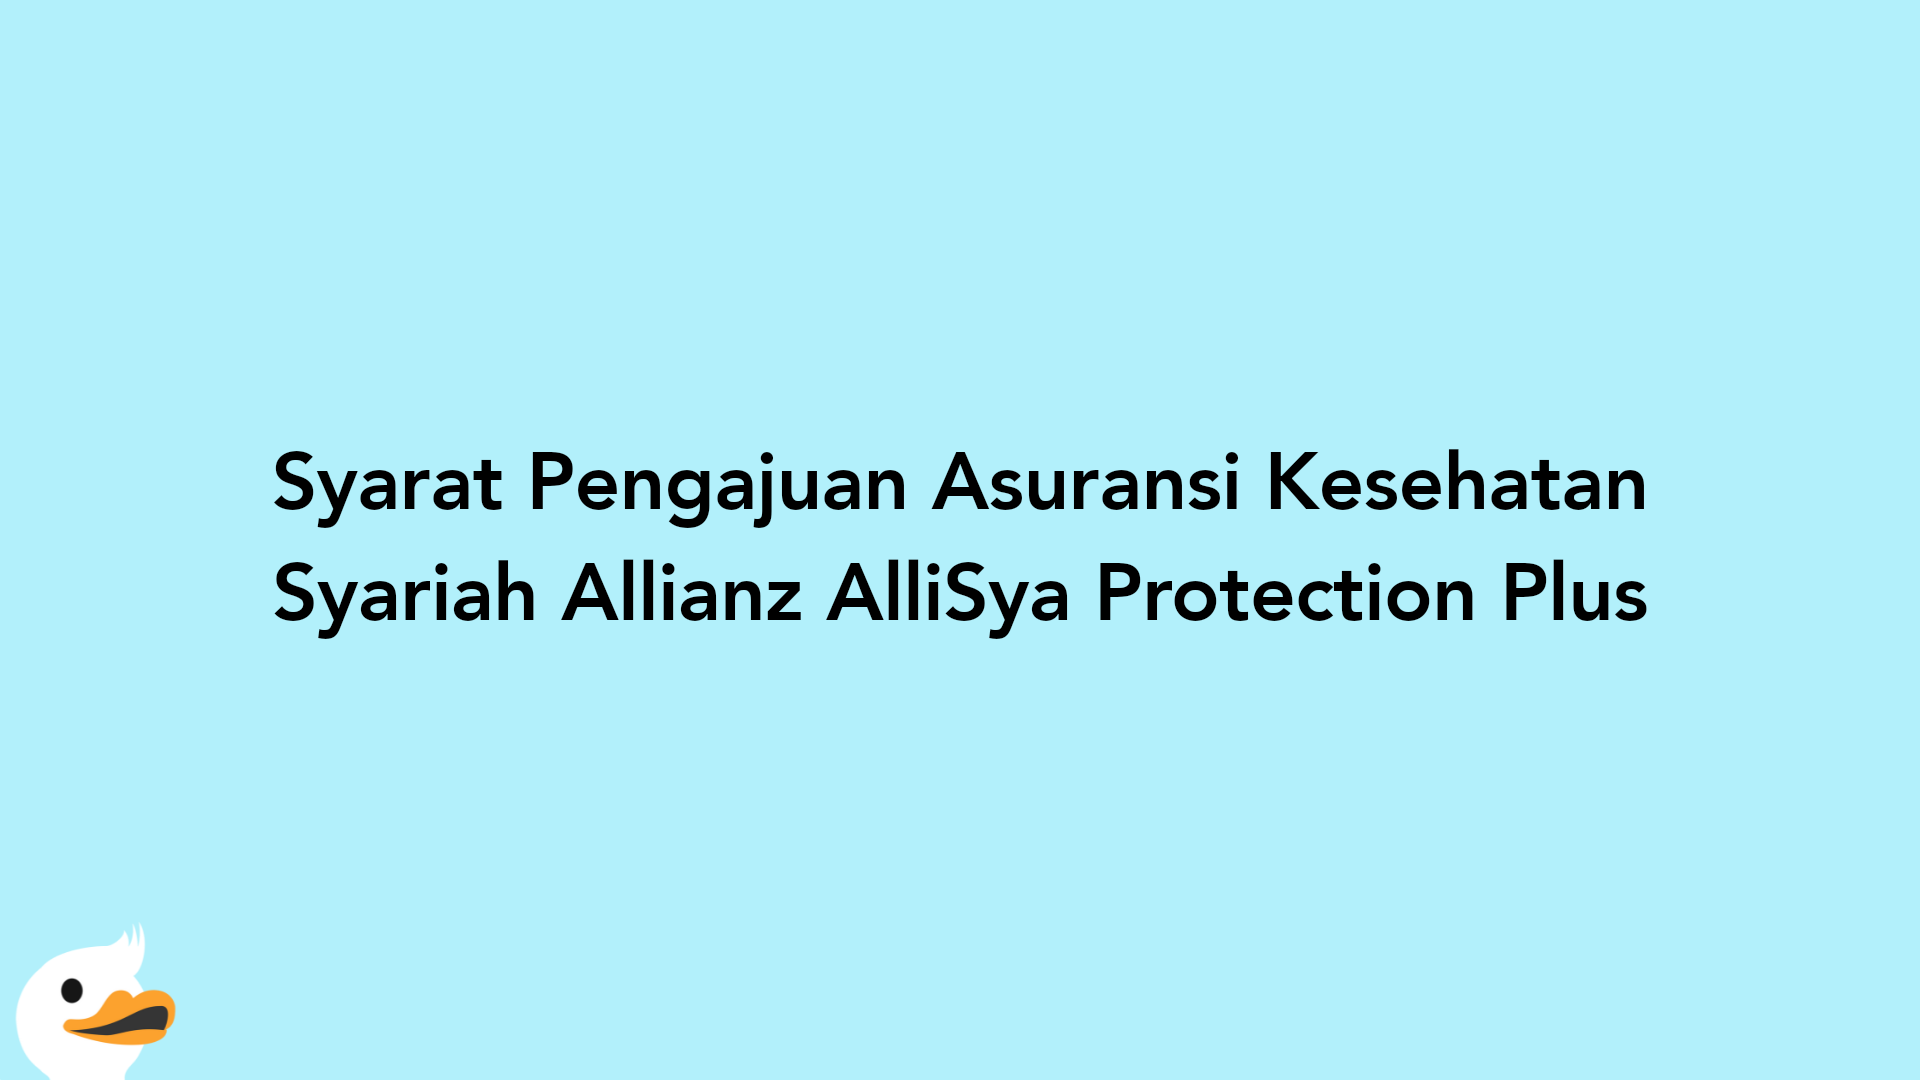 Syarat Pengajuan Asuransi Kesehatan Syariah Allianz AlliSya Protection Plus